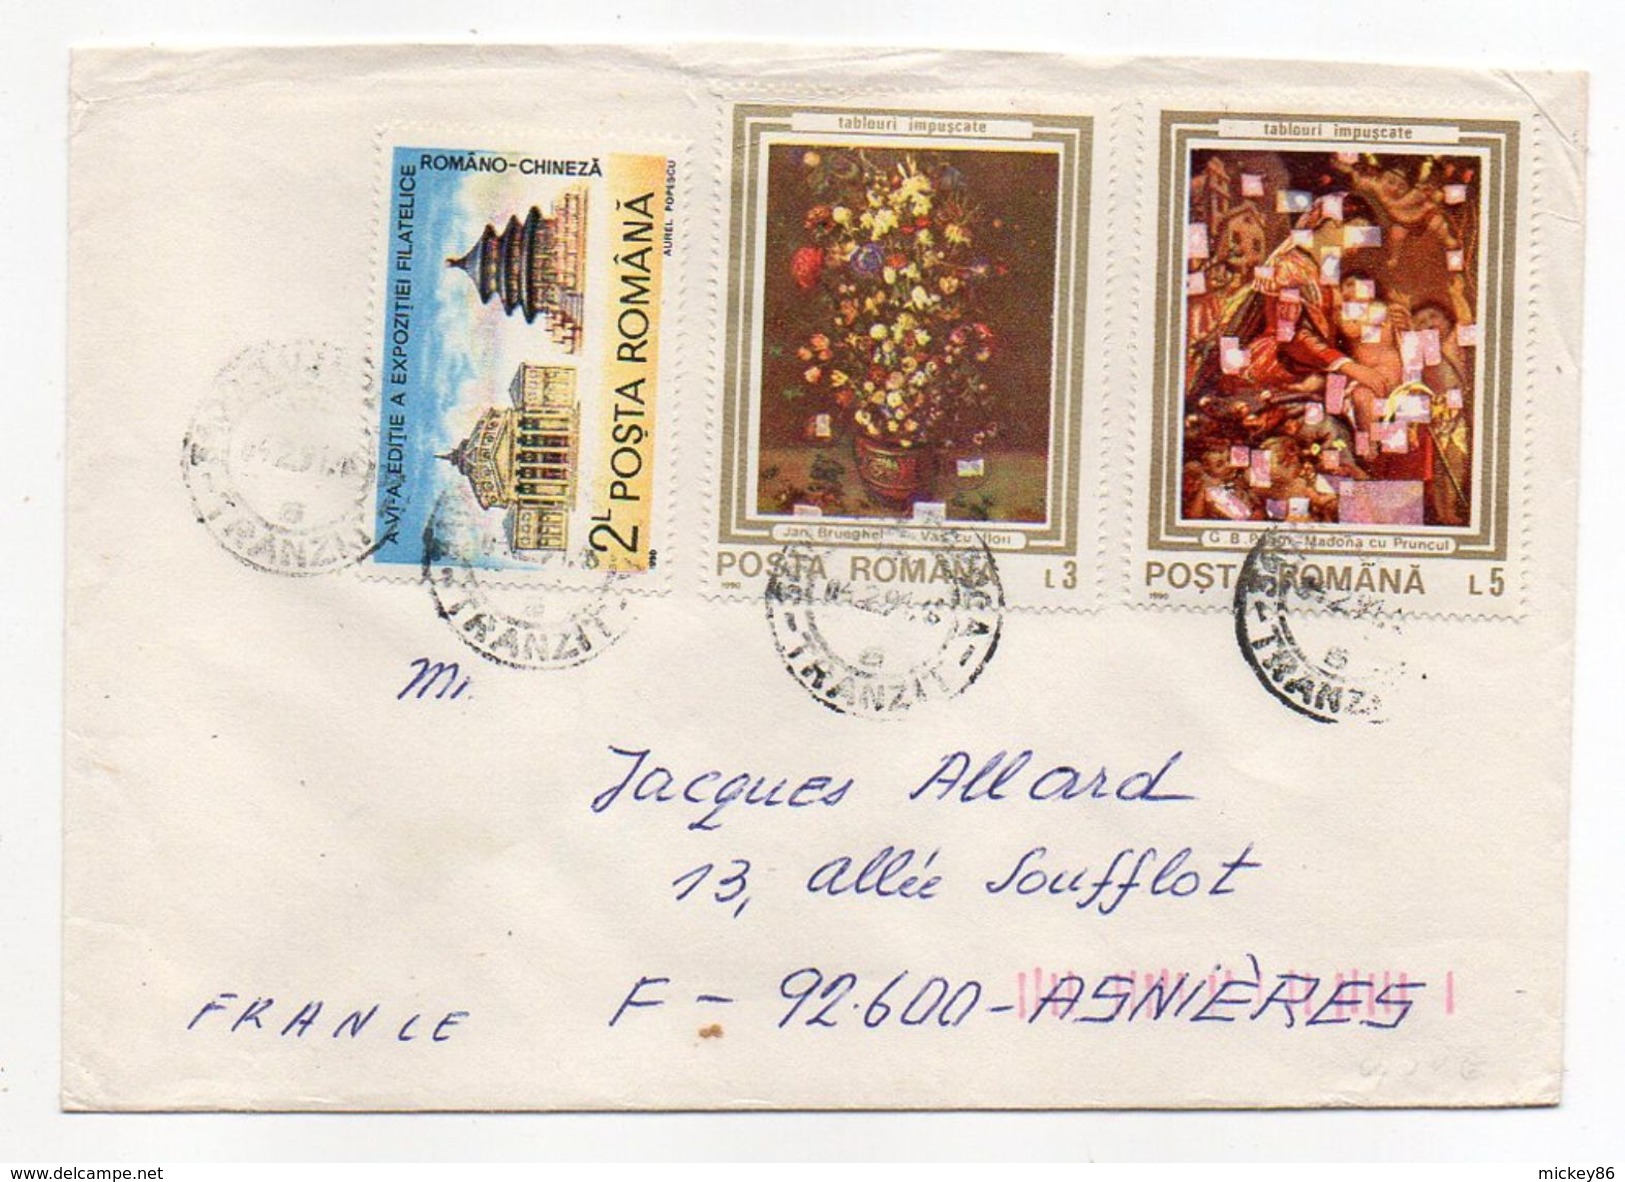 Roumanie-1990-Lettre De CLUJ-NAPOCA Pour ASNIERES-92(France) -beaux Timbres  -cachet CLUJ - Covers & Documents